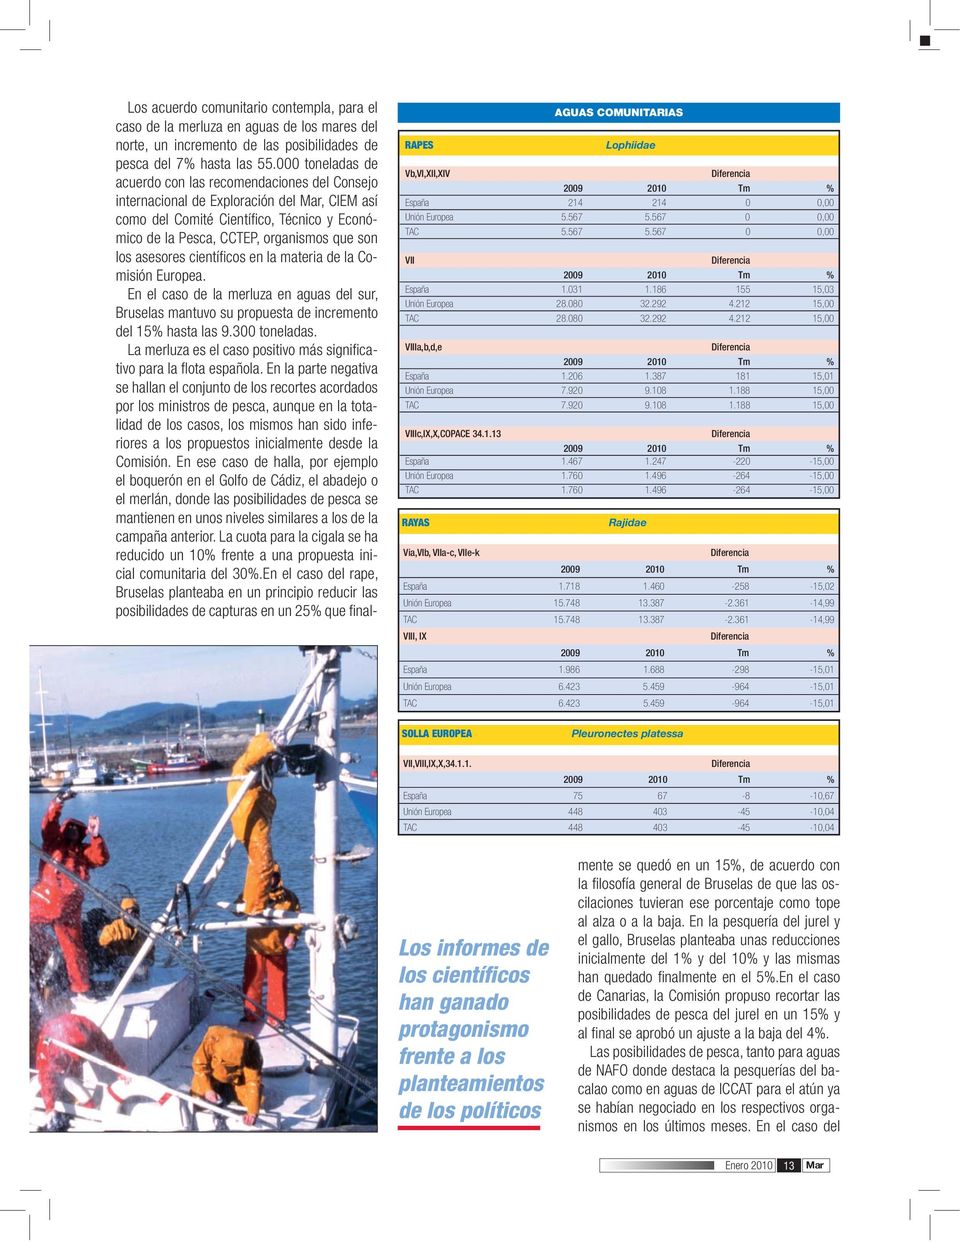 asesores científicos en la materia de la Comisión Europea. En el caso de la merluza en aguas del sur, Bruselas mantuvo su propuesta de incremento del 15% hasta las 9.300 toneladas.